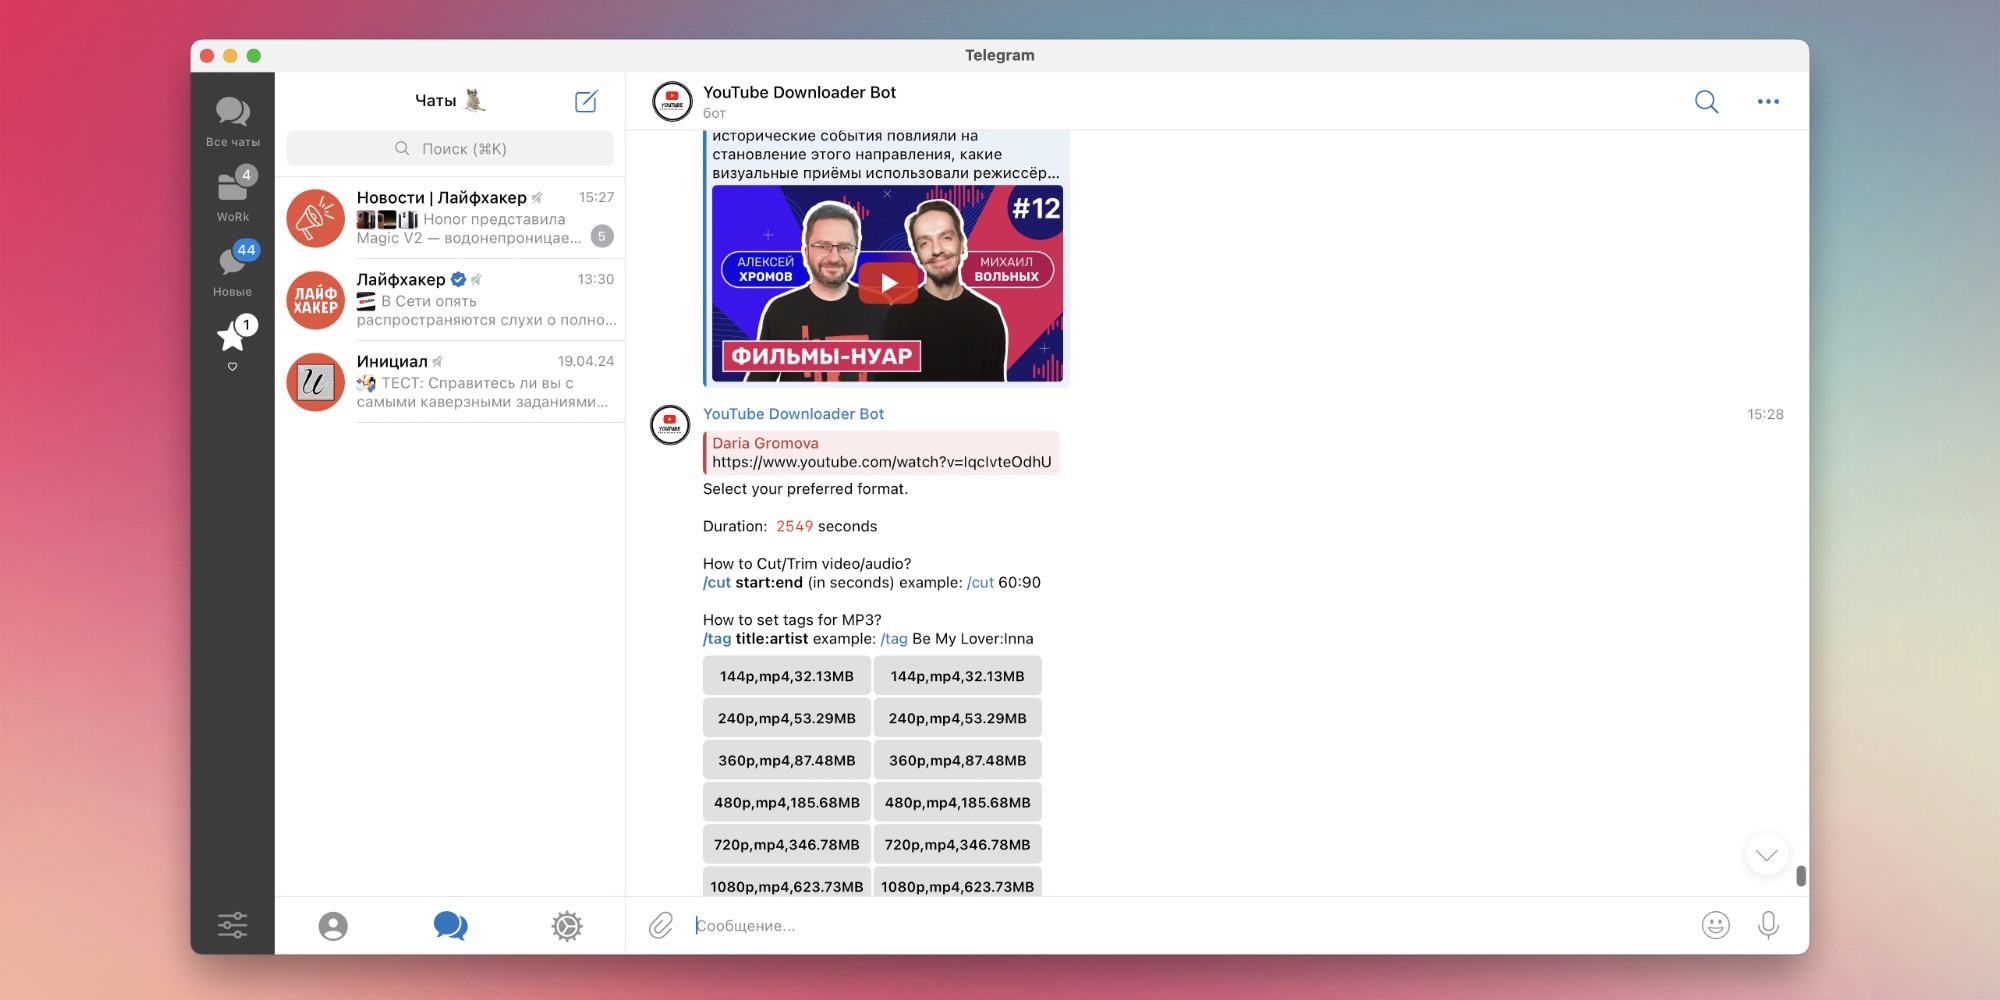 Telegram-бот YouTube Downloader Bot